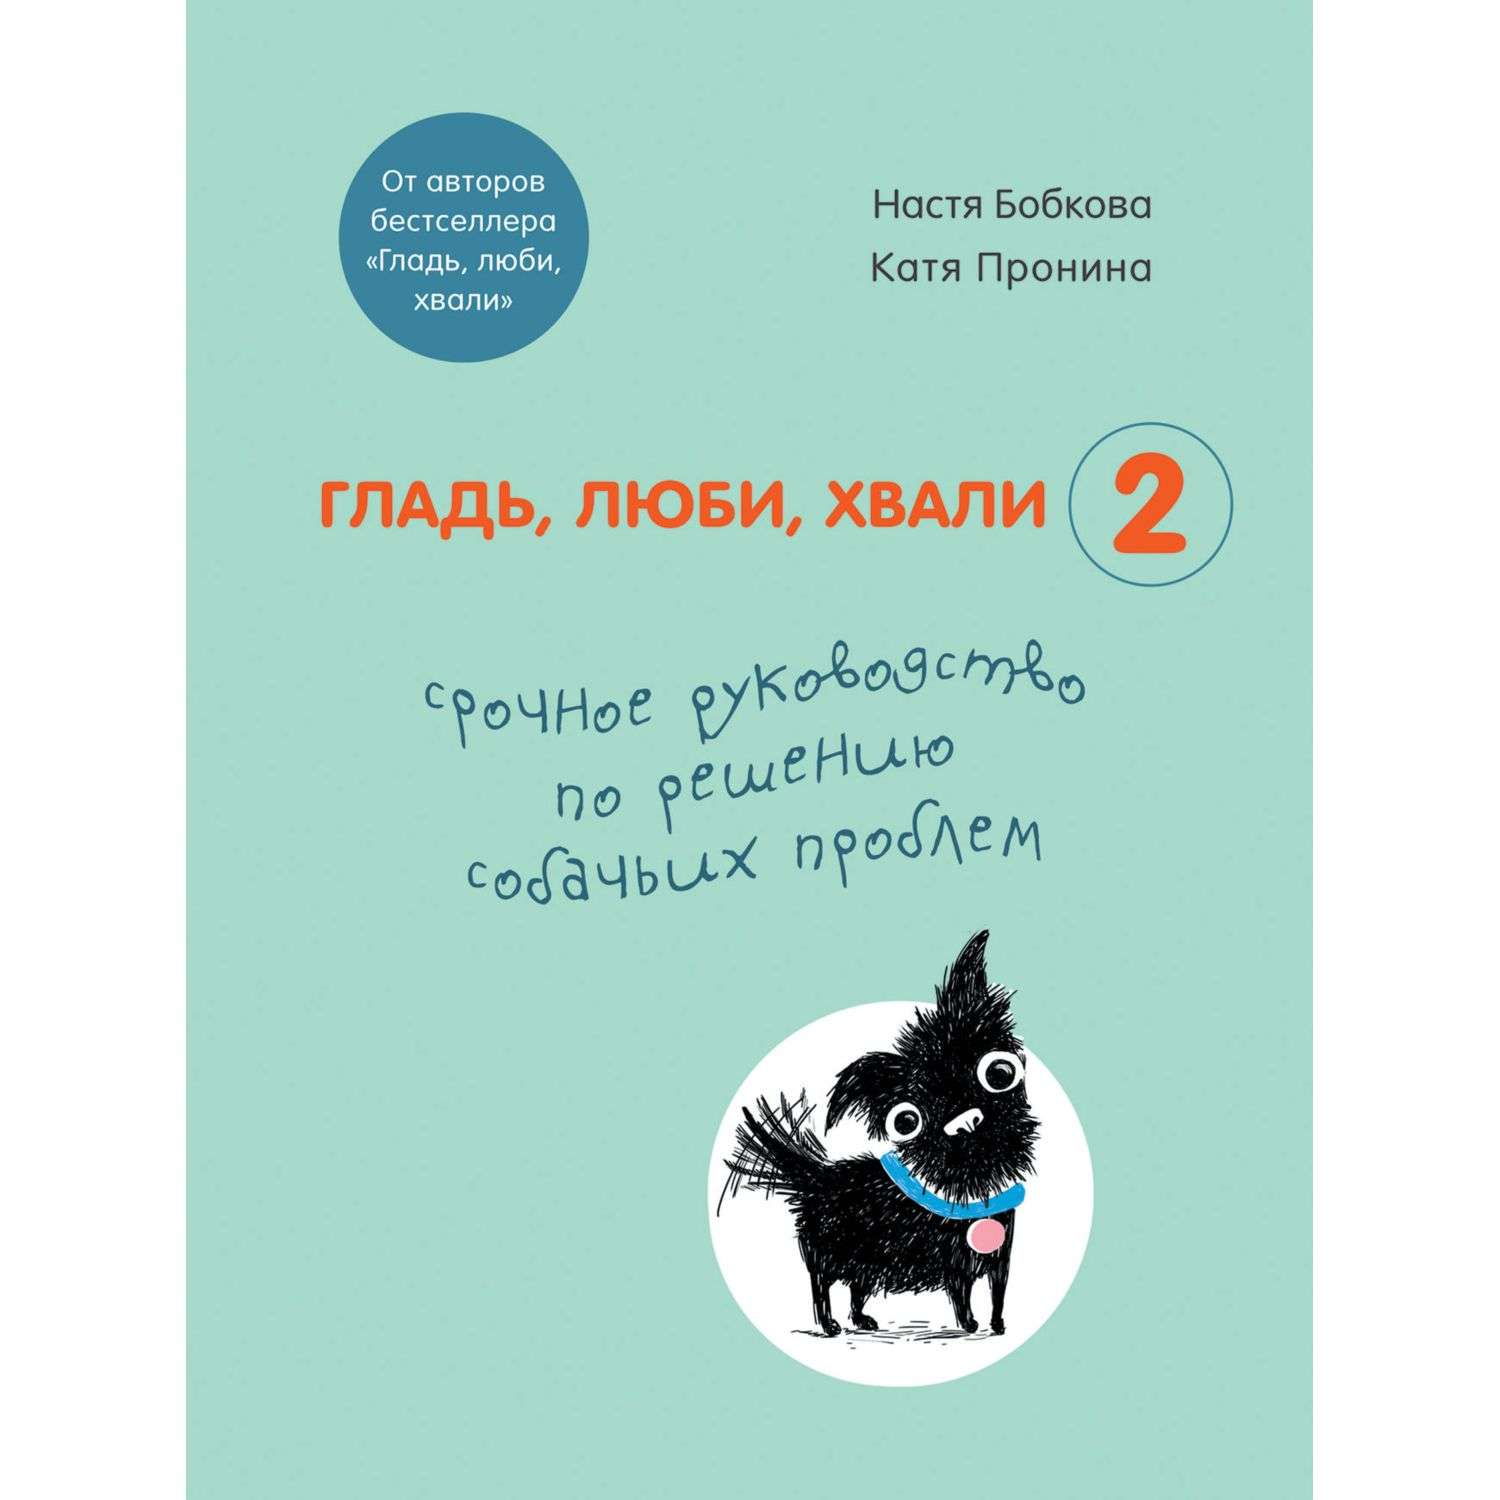 Книга БОМБОРА Гладь люби хвали 2 Срочное руководство по решению собачьих проблем - фото 3